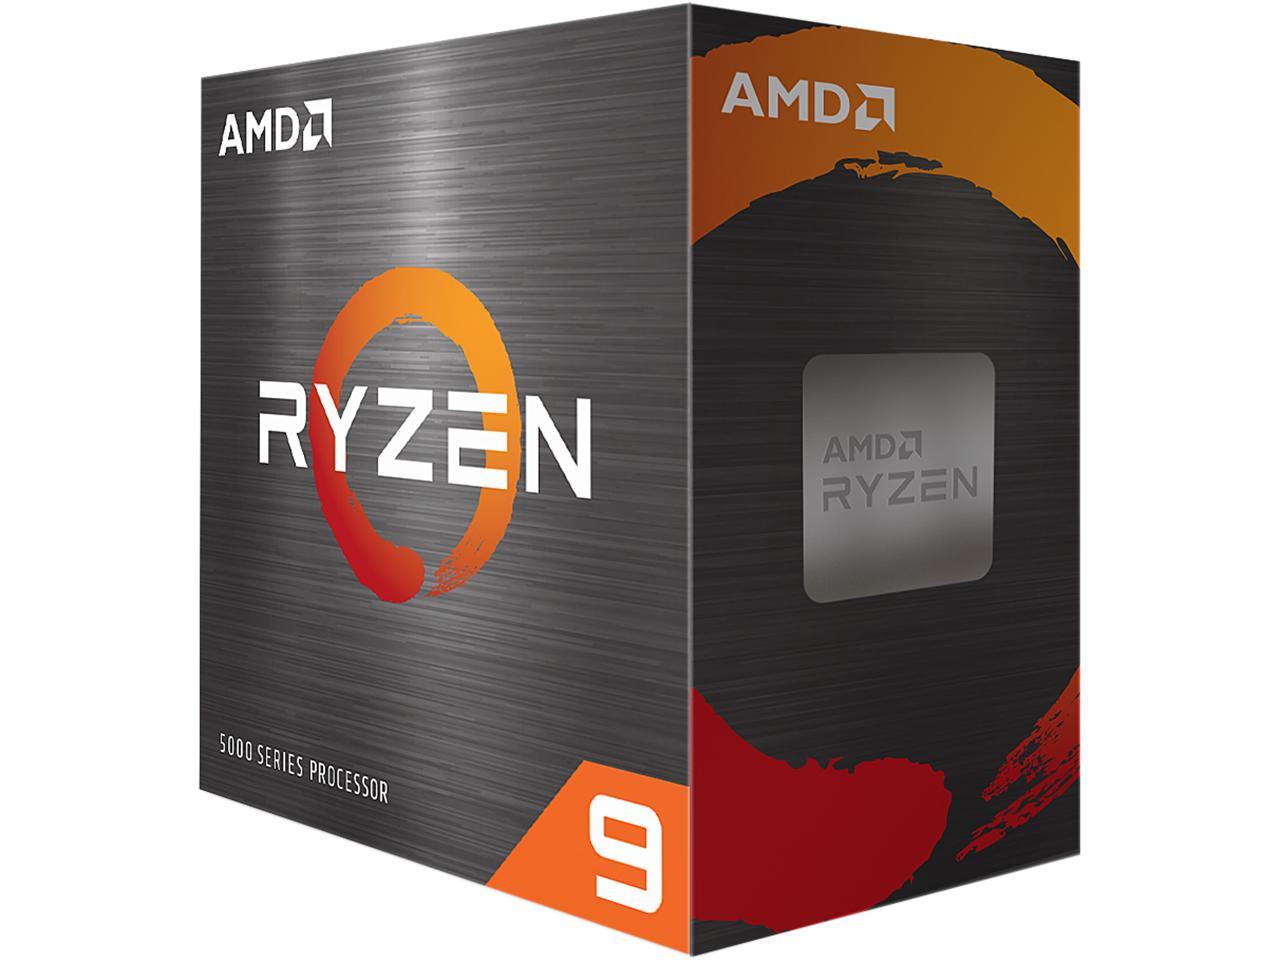 AMD Ryzen 9 5950X 16-core, 32-Thread Unlocked Desktop Processor $424